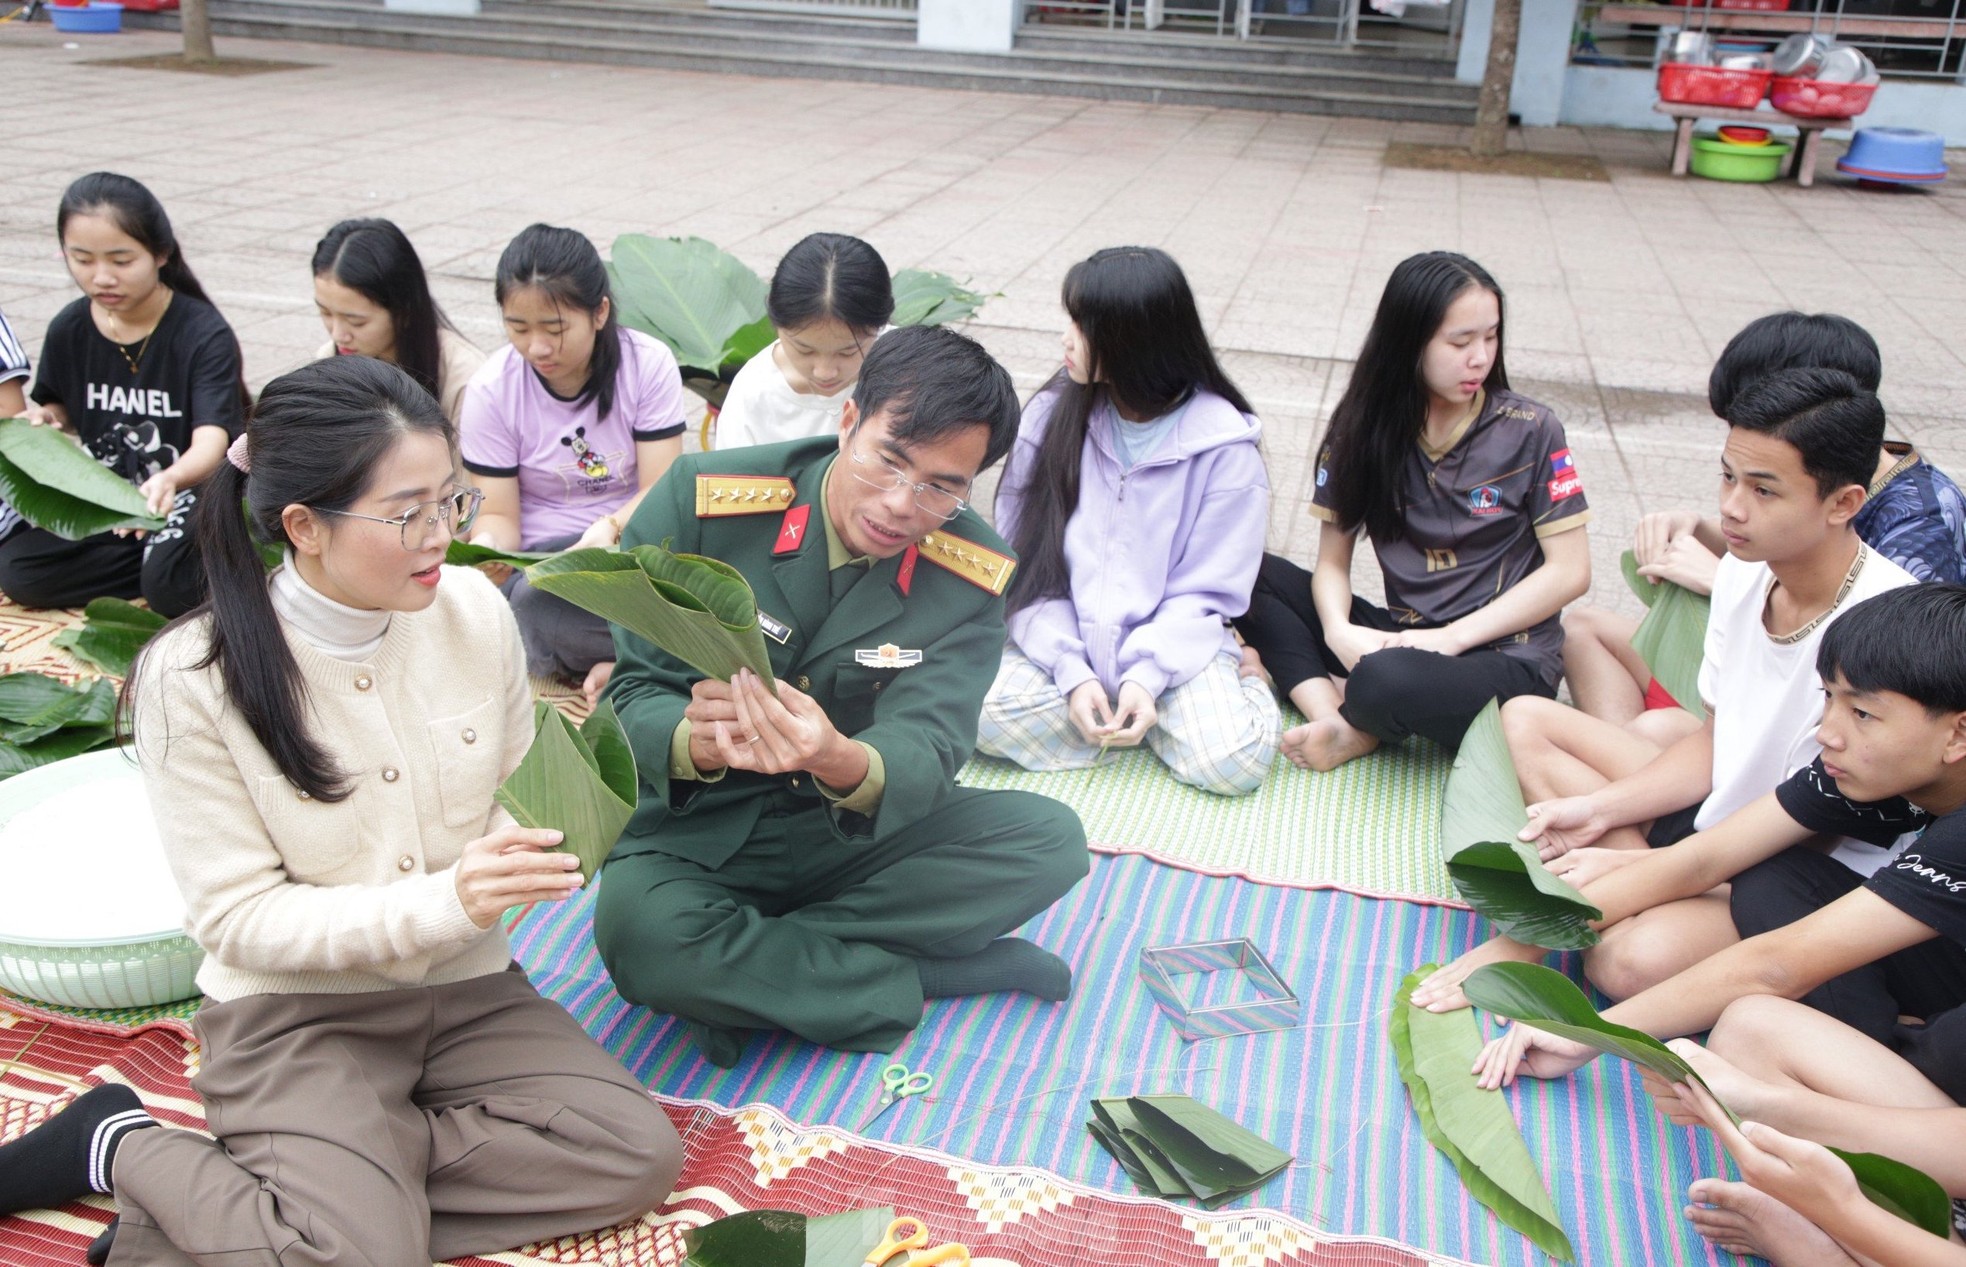 Chiến sĩ bộ đội hướng dẫn du học sinh Lào gói bánh chưng, trải nghiệm Tết Việt